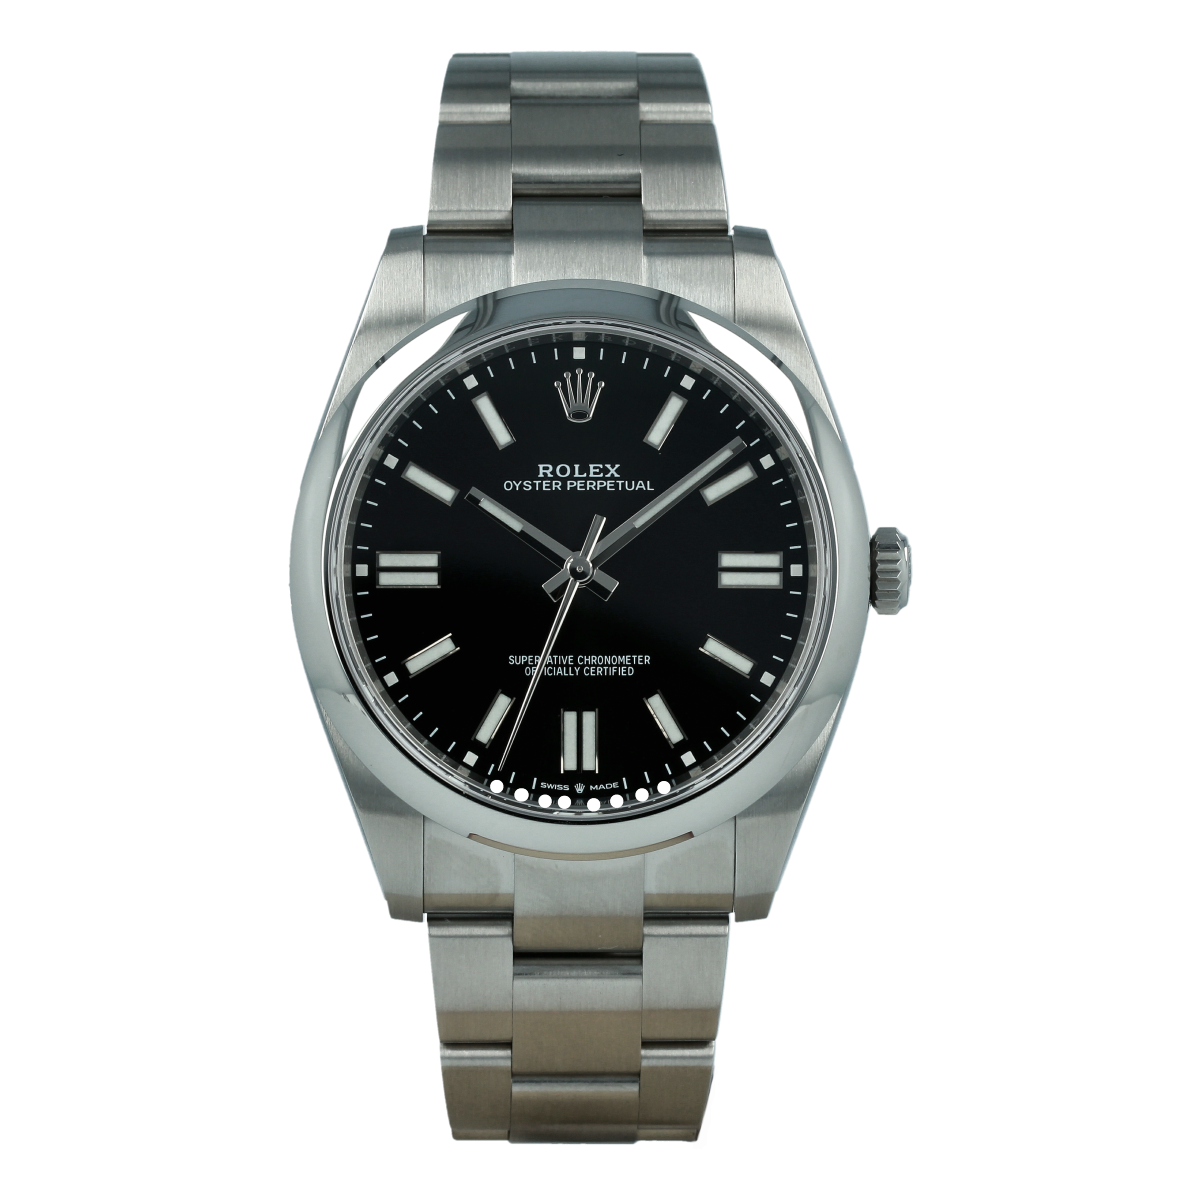 Rolex Oyster Perpetual 124300 41mm Esfera Negro Vivo *Nuevo Modelo* | Comprar reloj Rolex de segunda mano